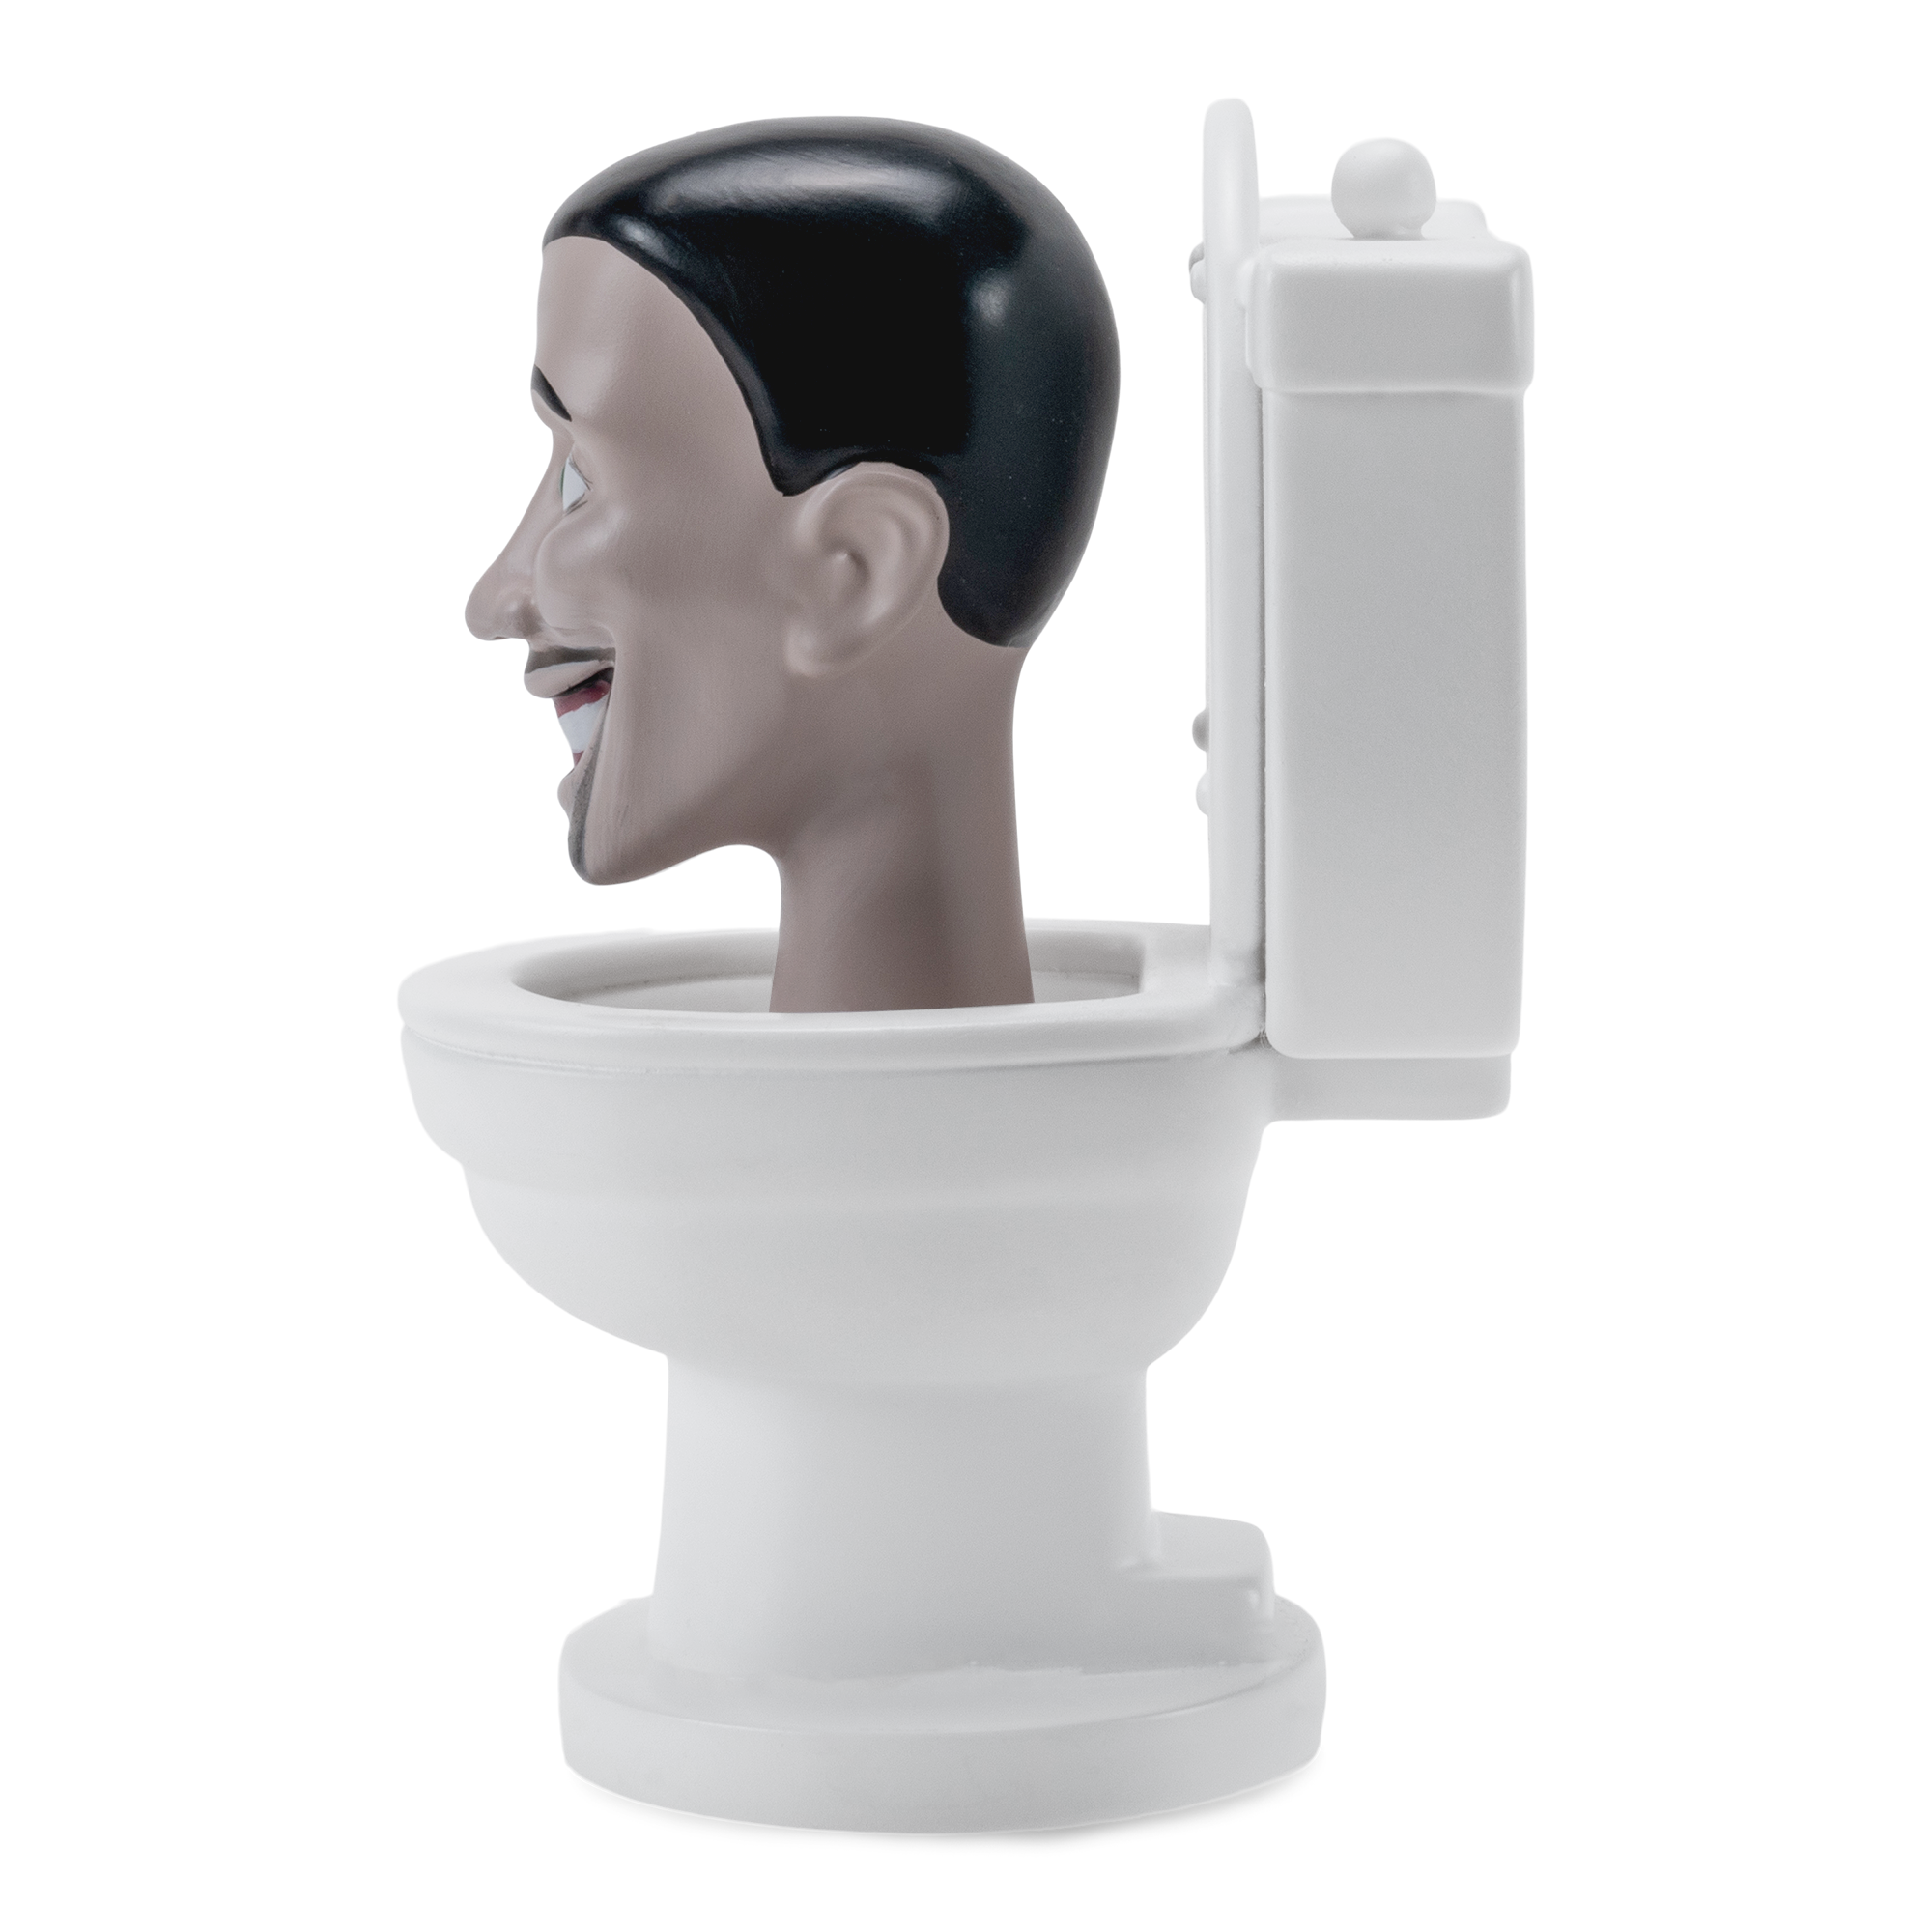 Skibidi Toilet! Concept by @medichistes #Funko #FunkoFamily #SkibidiToilet